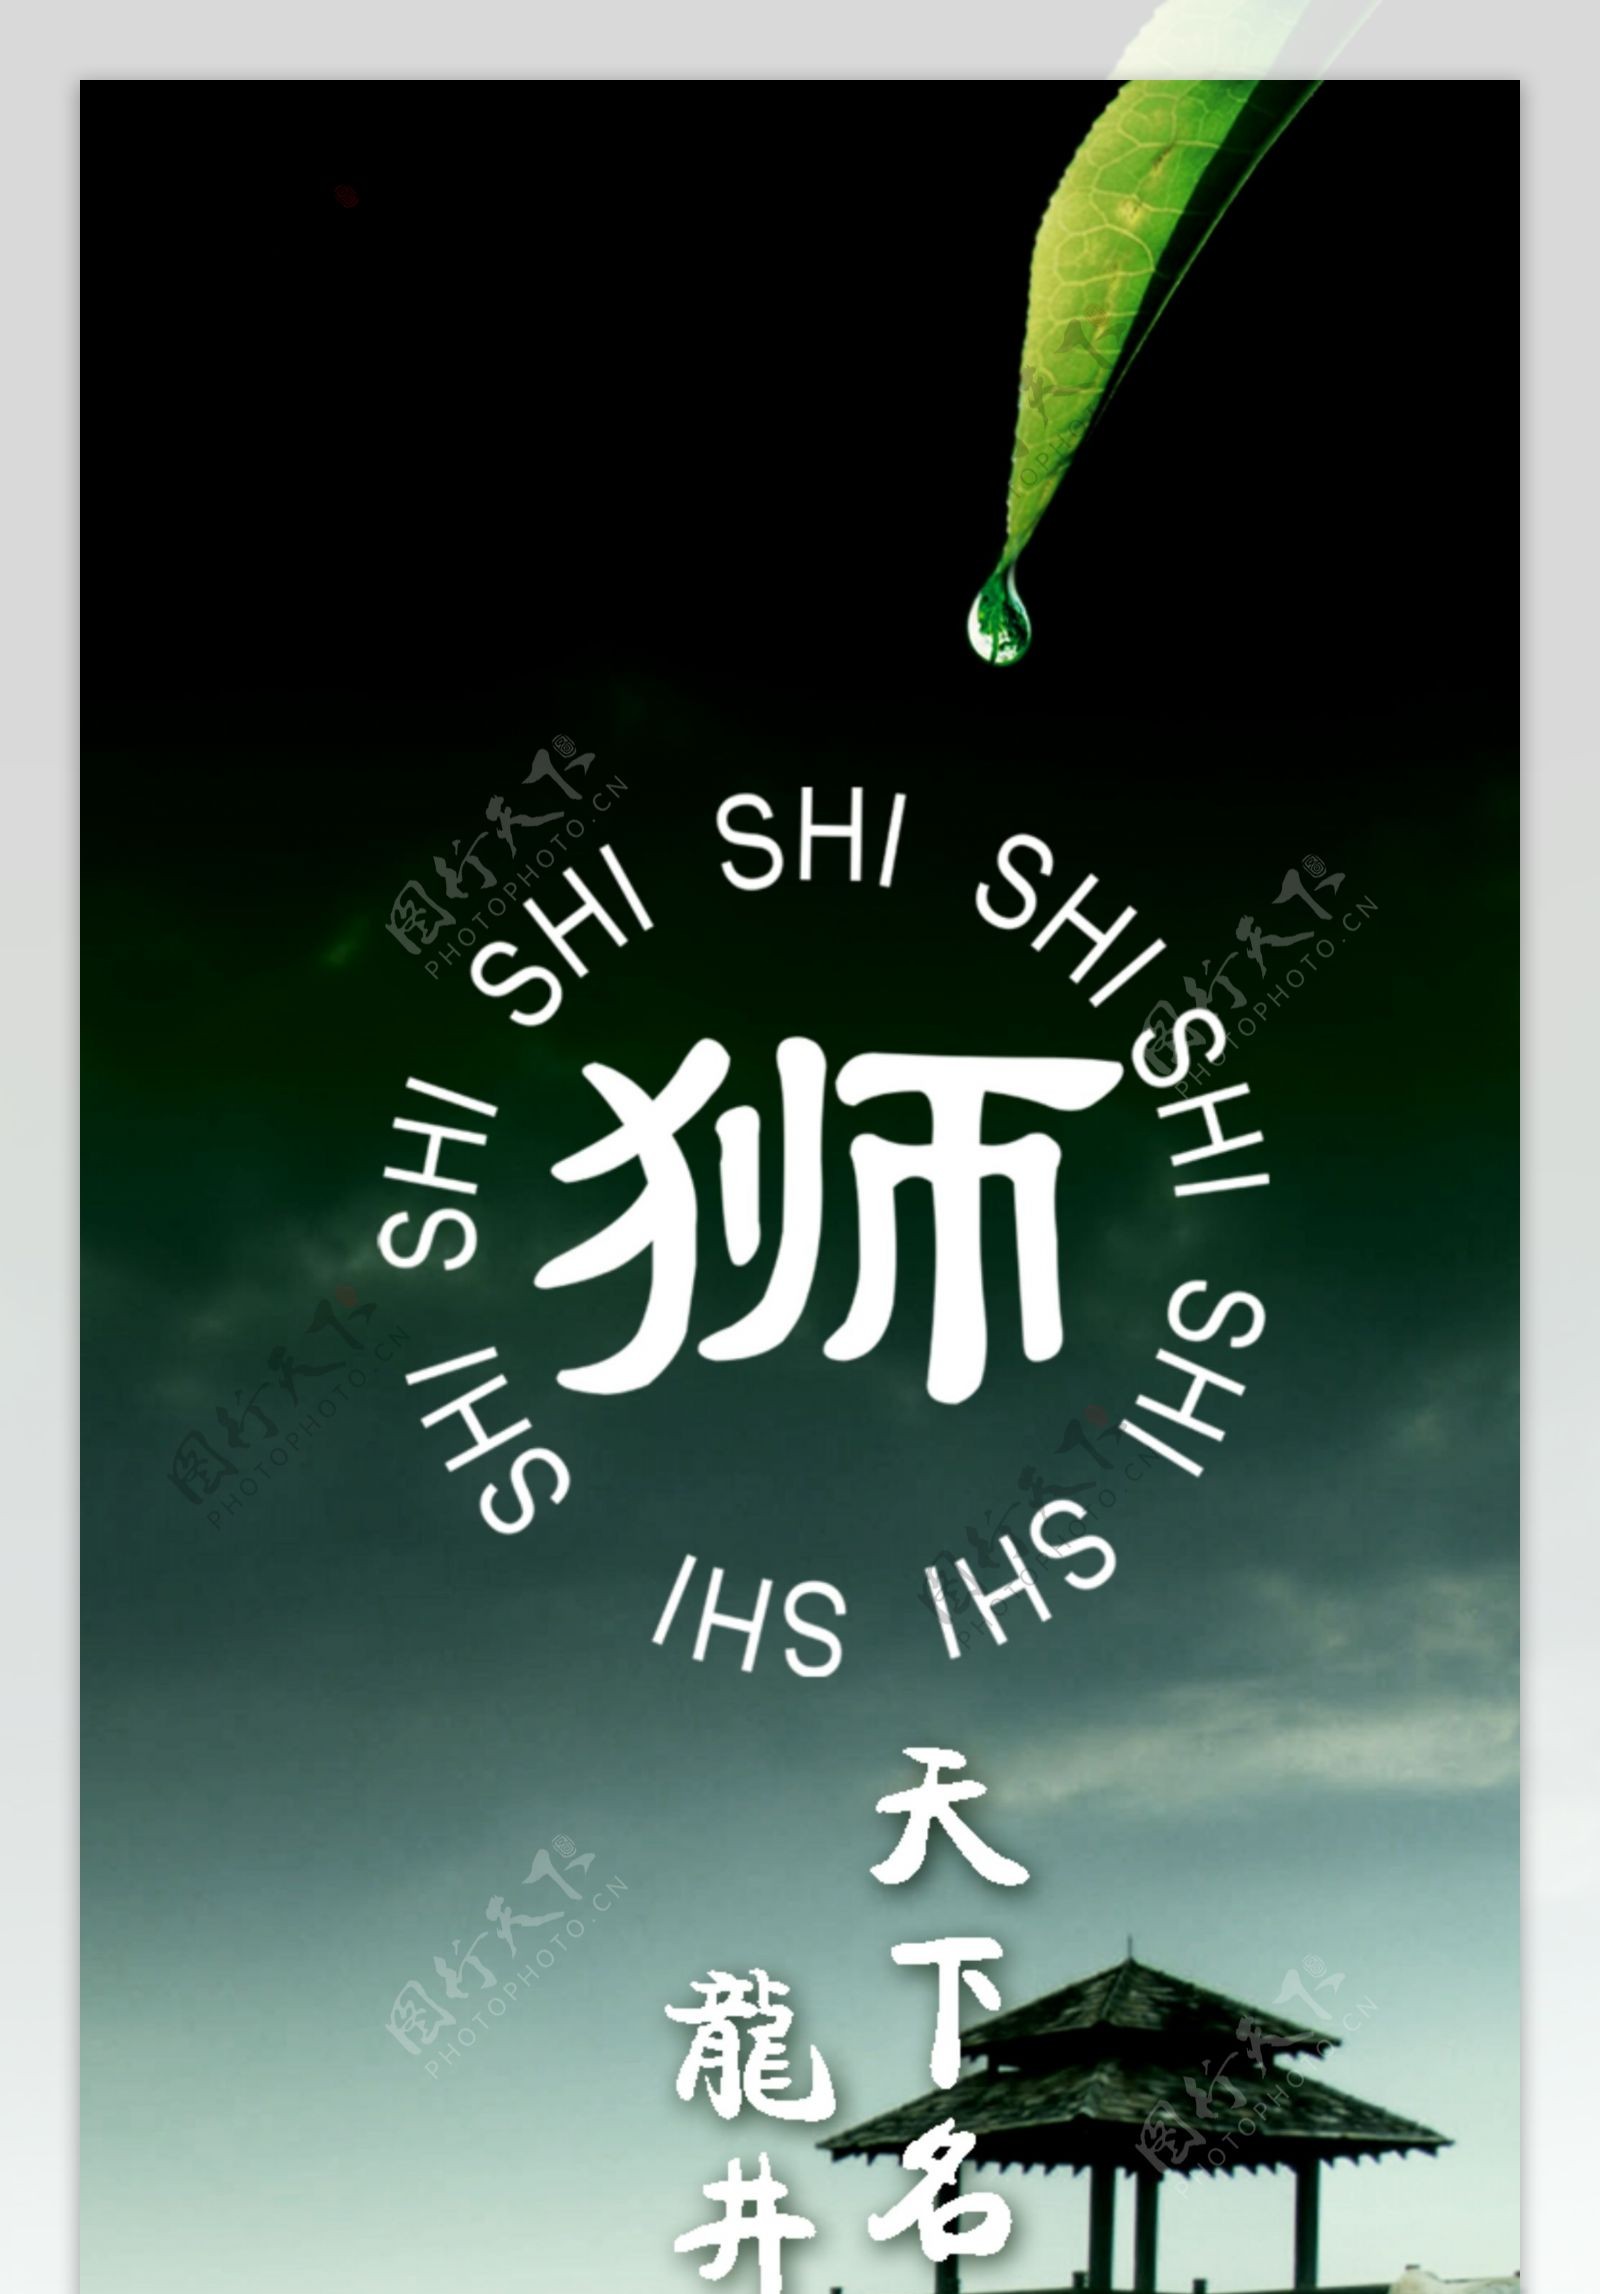 狮峰龙井广告图片